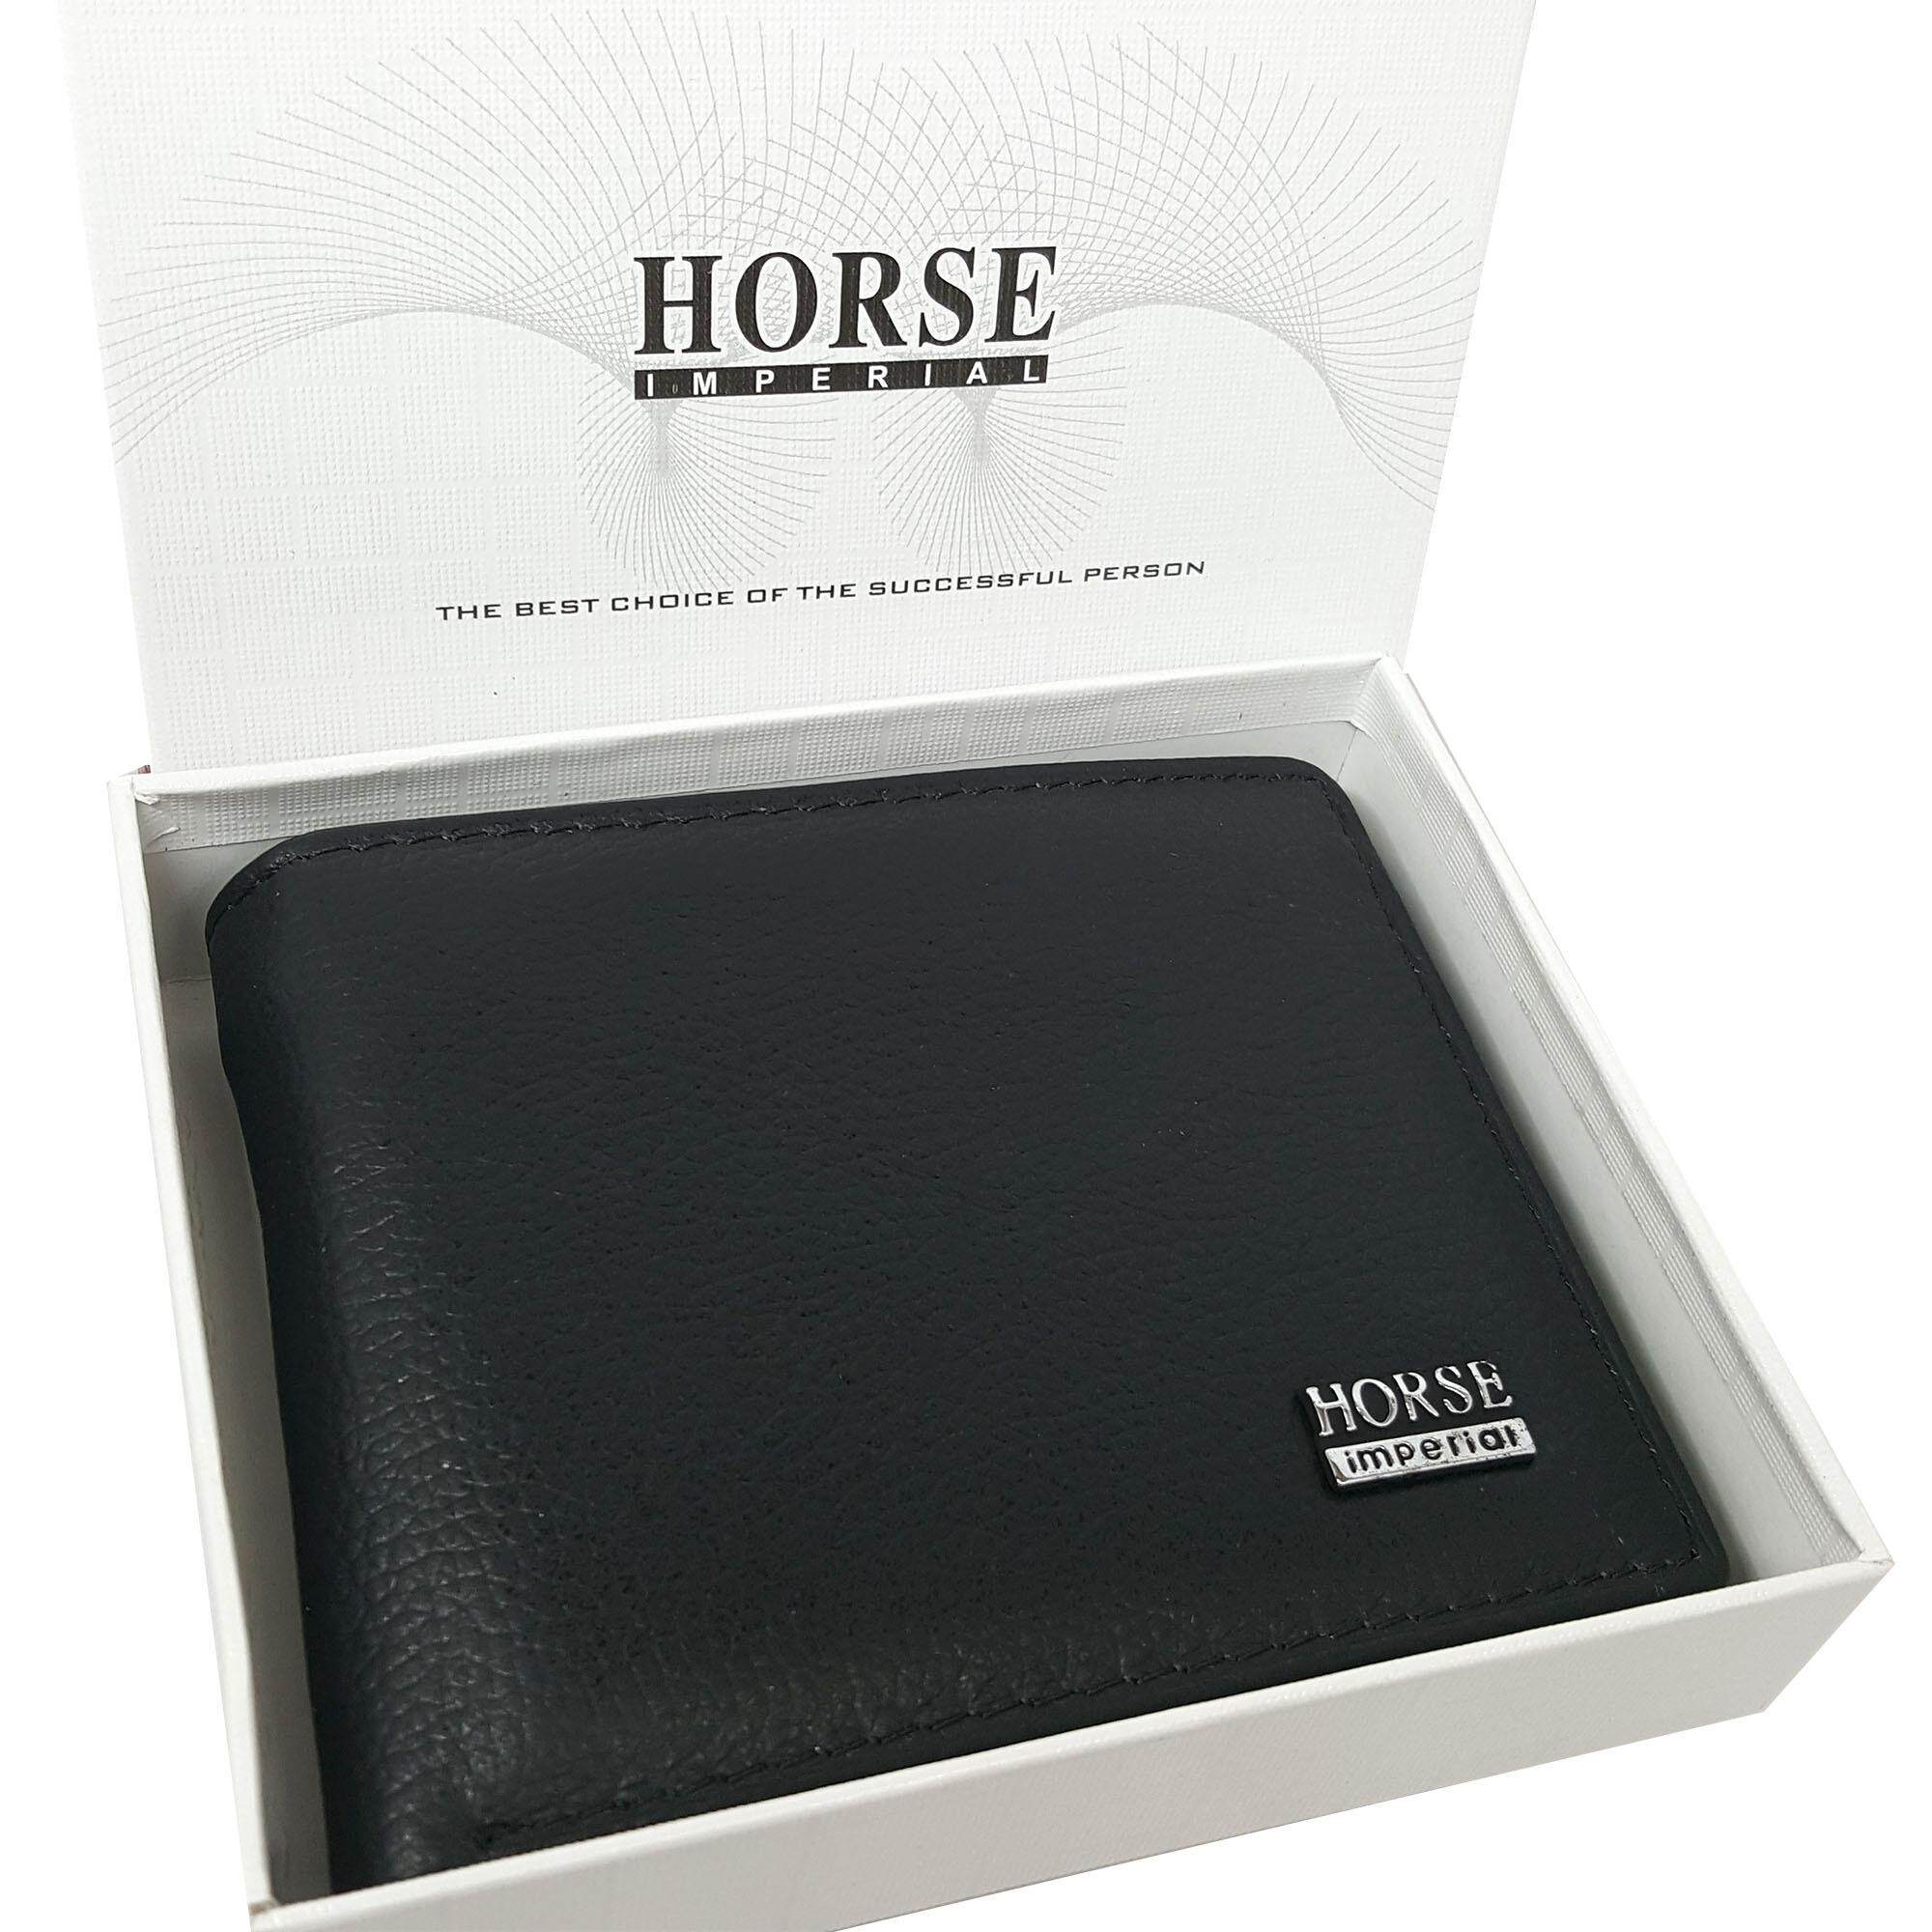 Horse Imperial Wallet กระเป๋าสตางค์แฟชั่น เรียบหรู ทรงสั้น รุ่นคลาสสิค Classic (พร้อมกล่องใส่) ขายดี สีดำ(Horse Imperial)